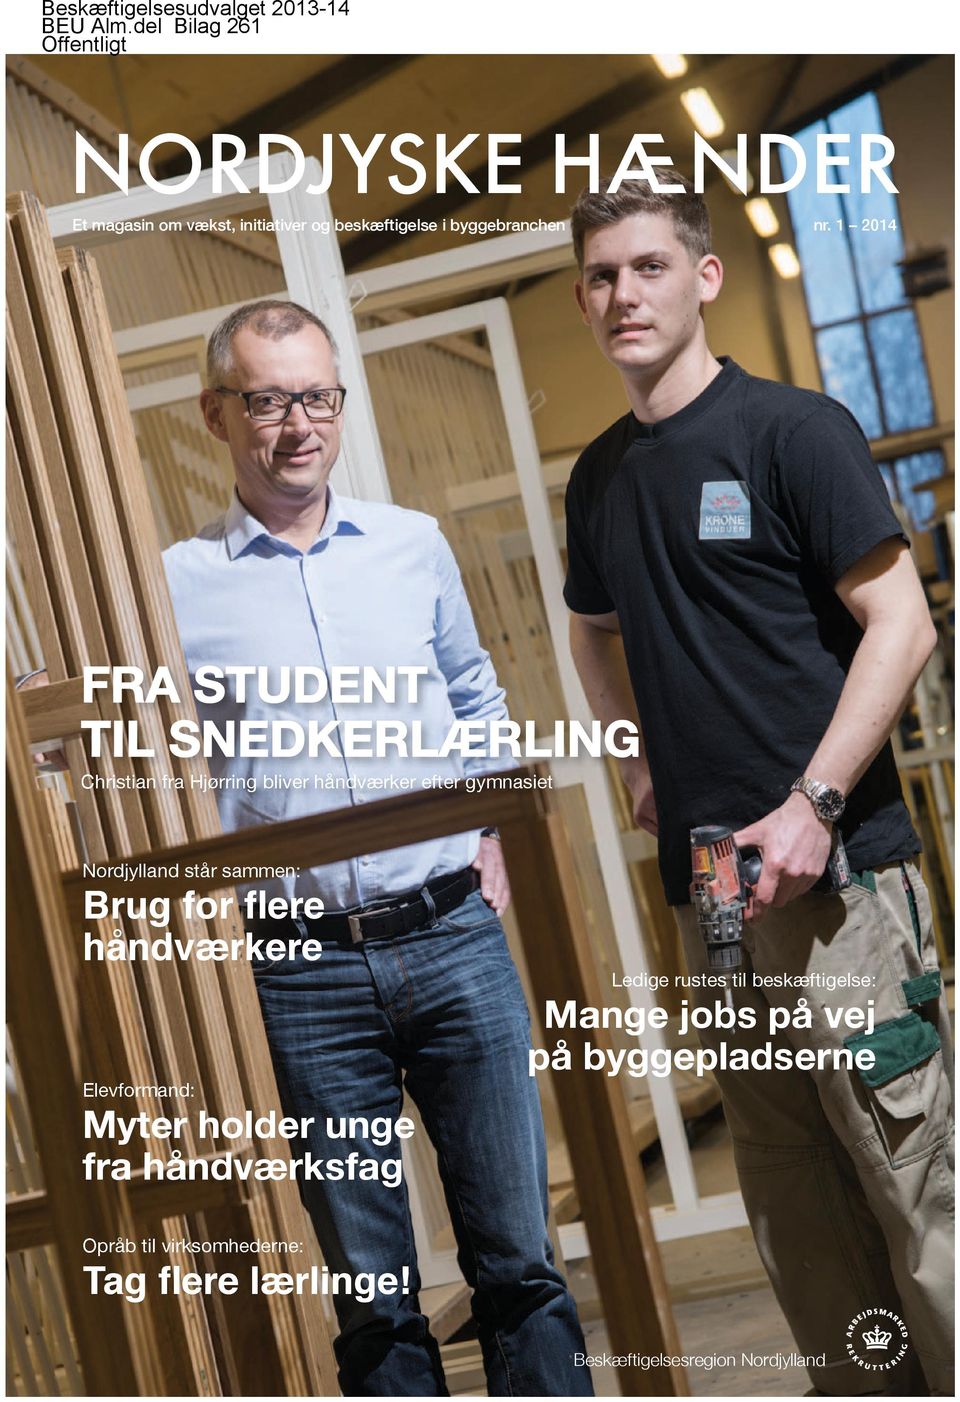 1 2014 FRA STUDENT TIL SNEDKERLÆRLING Christian fra Hjørring bliver håndværker efter gymnasiet Nordjylland står sammen: